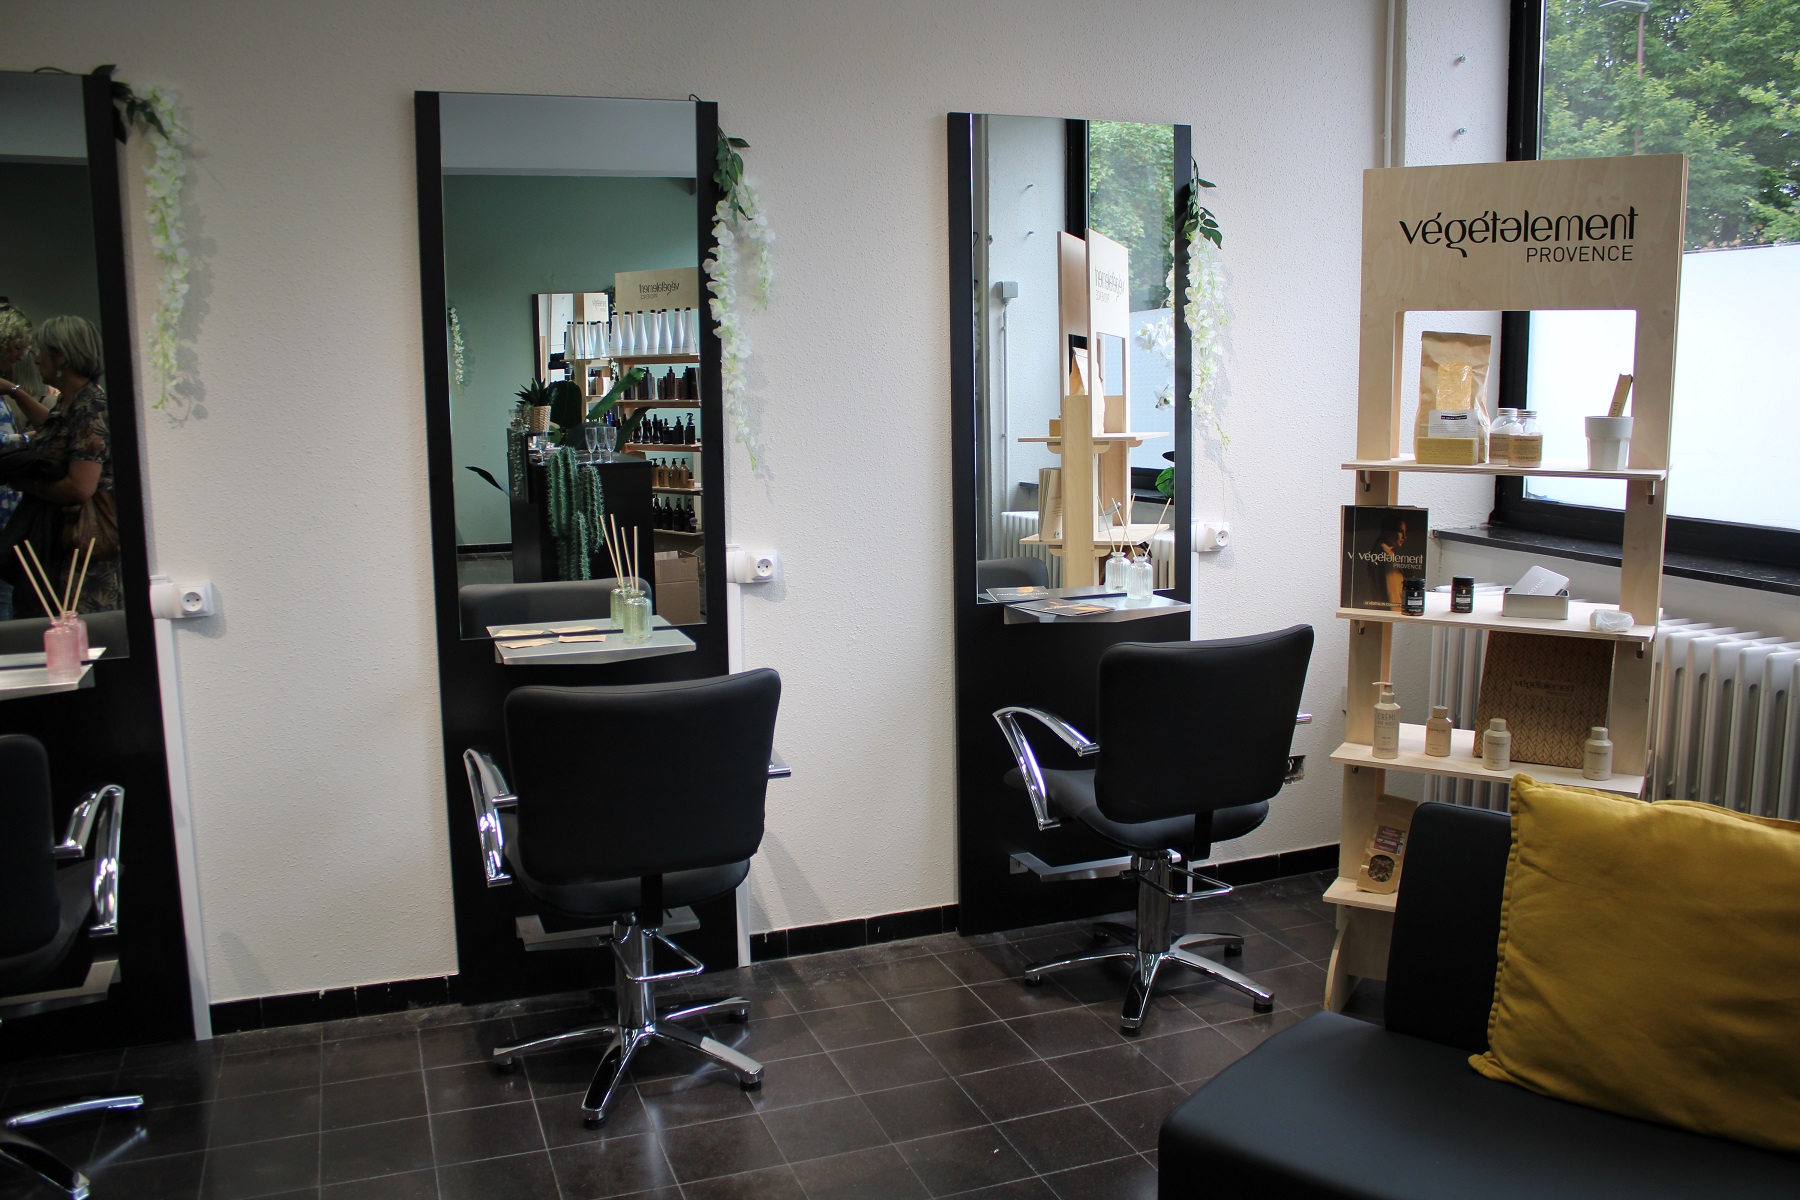 Un salon de coiffure socio-esthétique ouvre ses portes à l'Académie Provinciale des Métiers de Mons